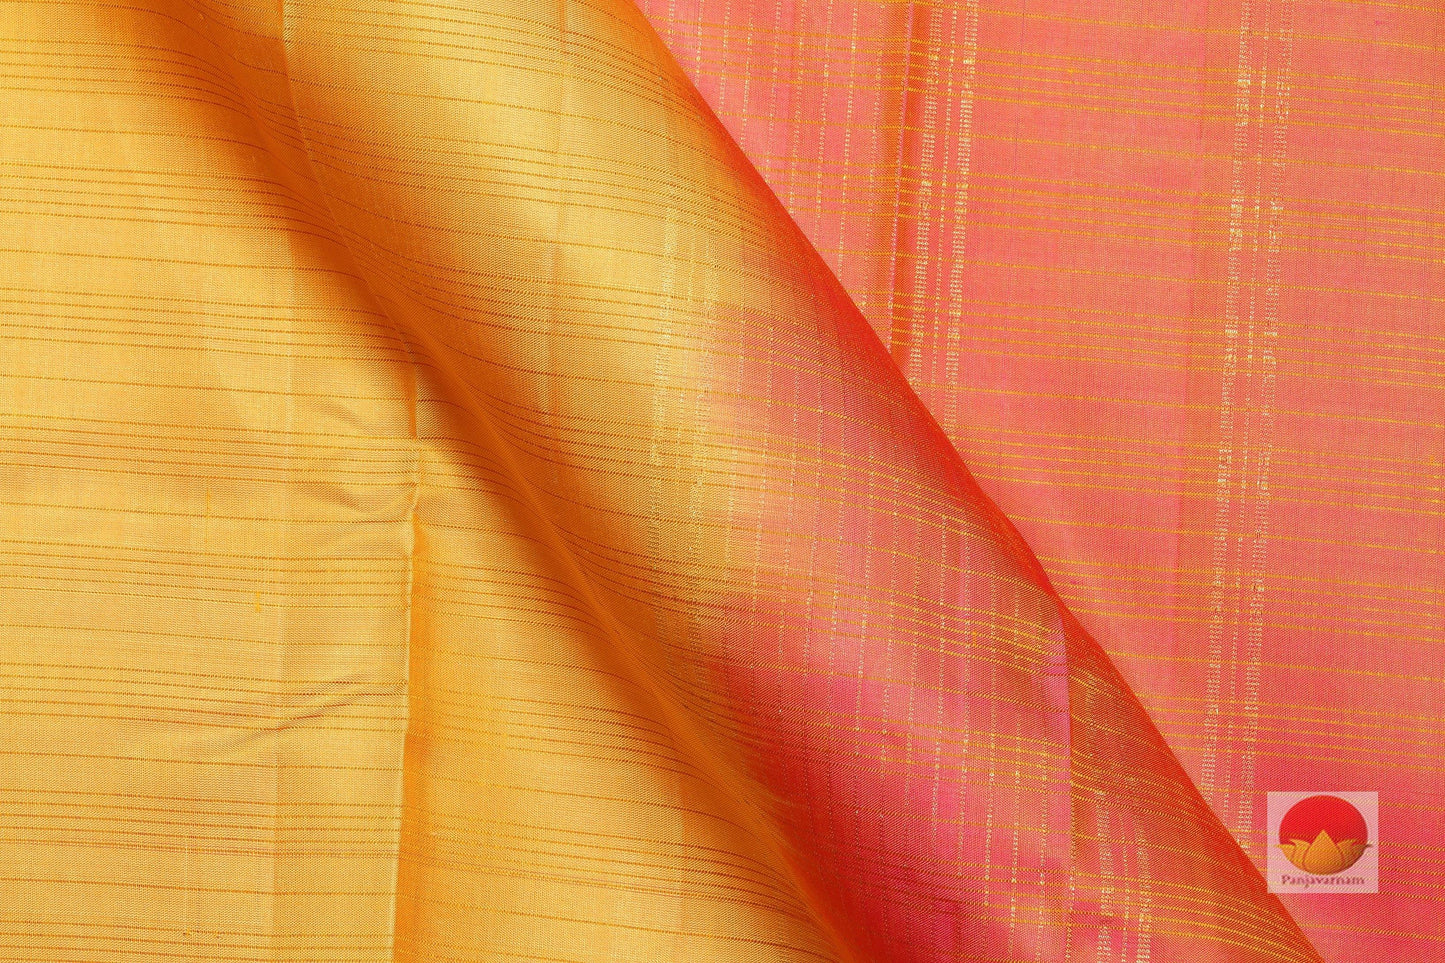 Lite Weight Handwoven Pure Silk Kanjivaram Saree - PV 402 Archives - Silk Sari - Panjavarnam